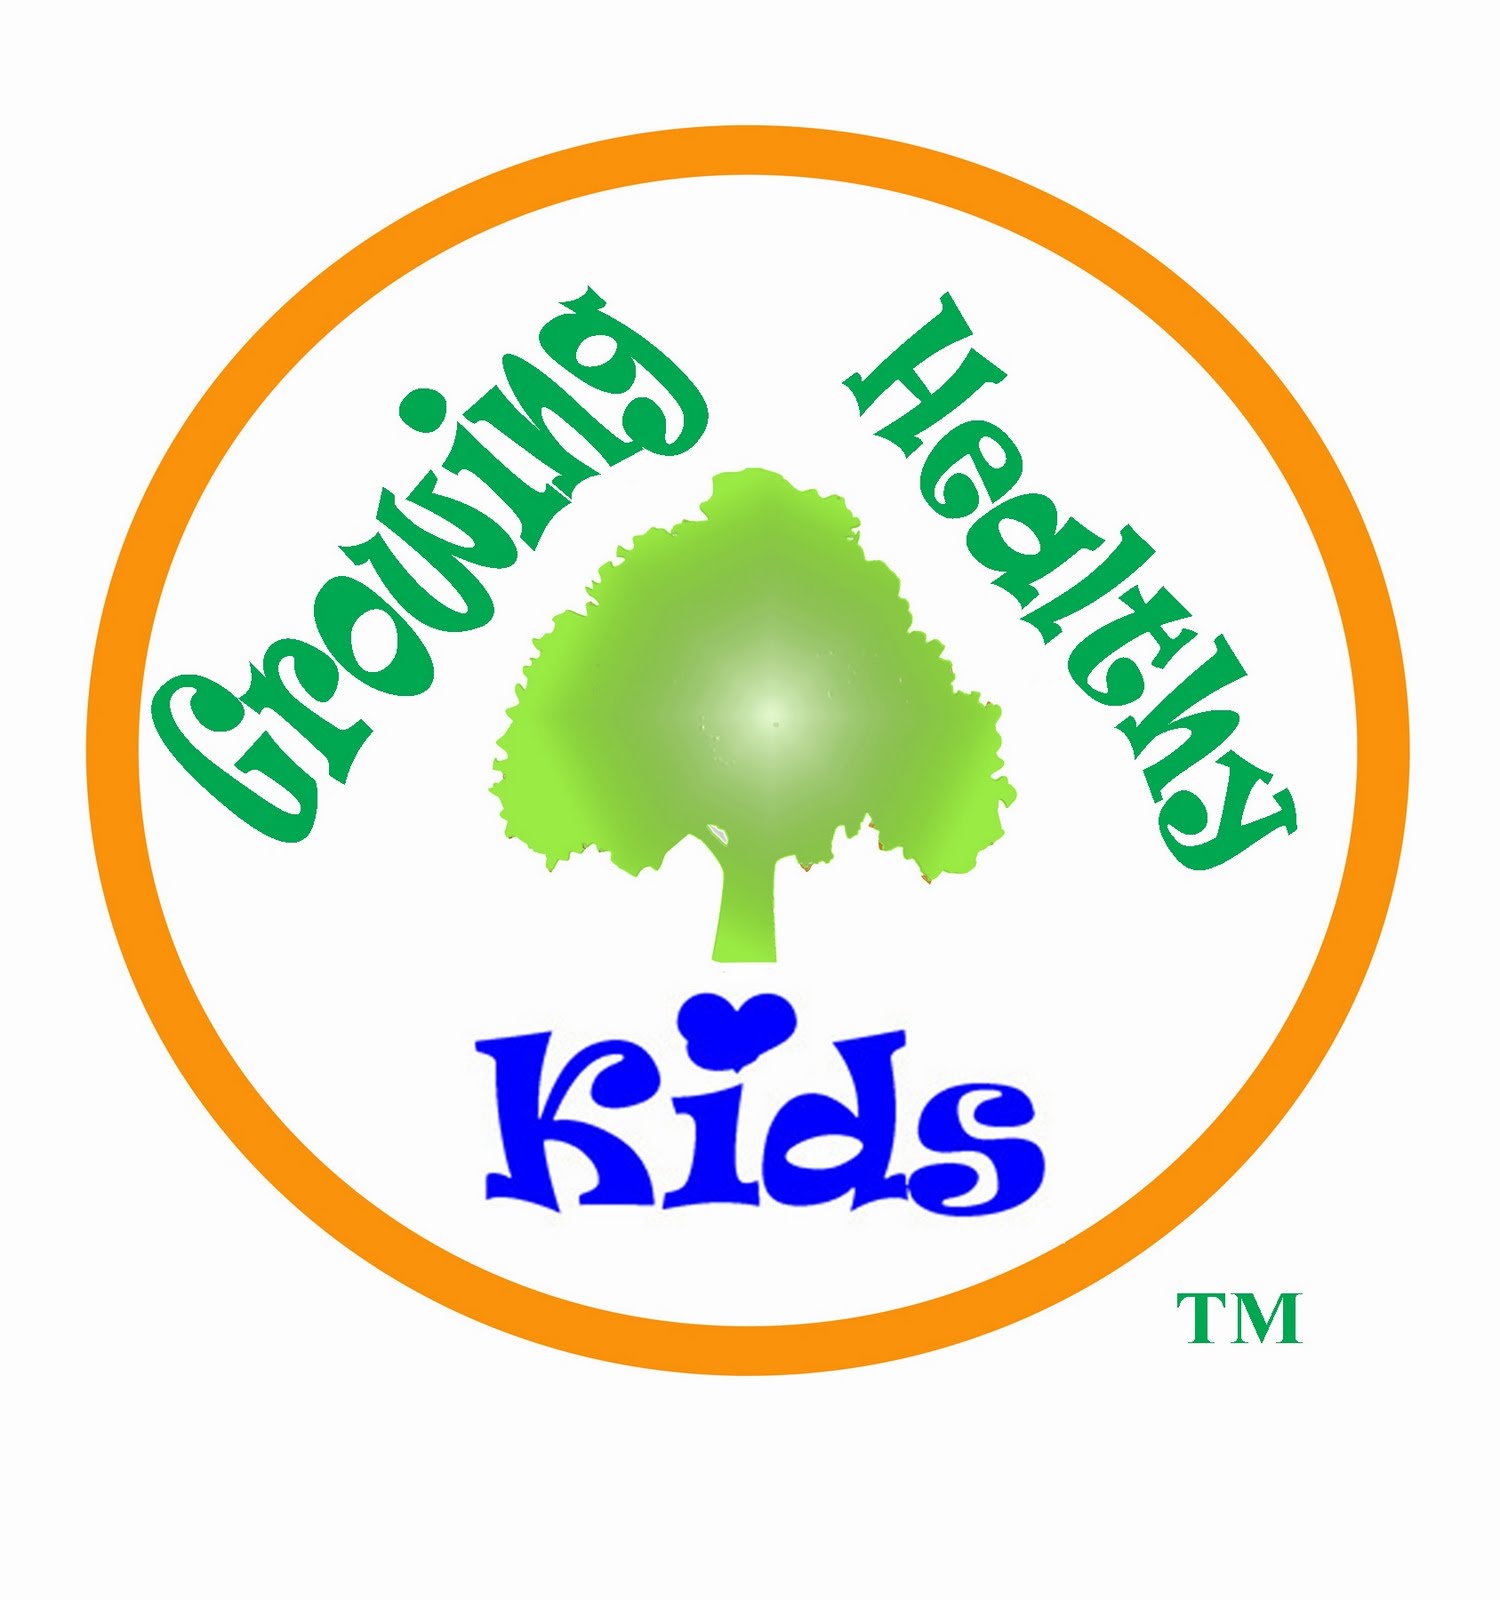 Growing Healthy Kids